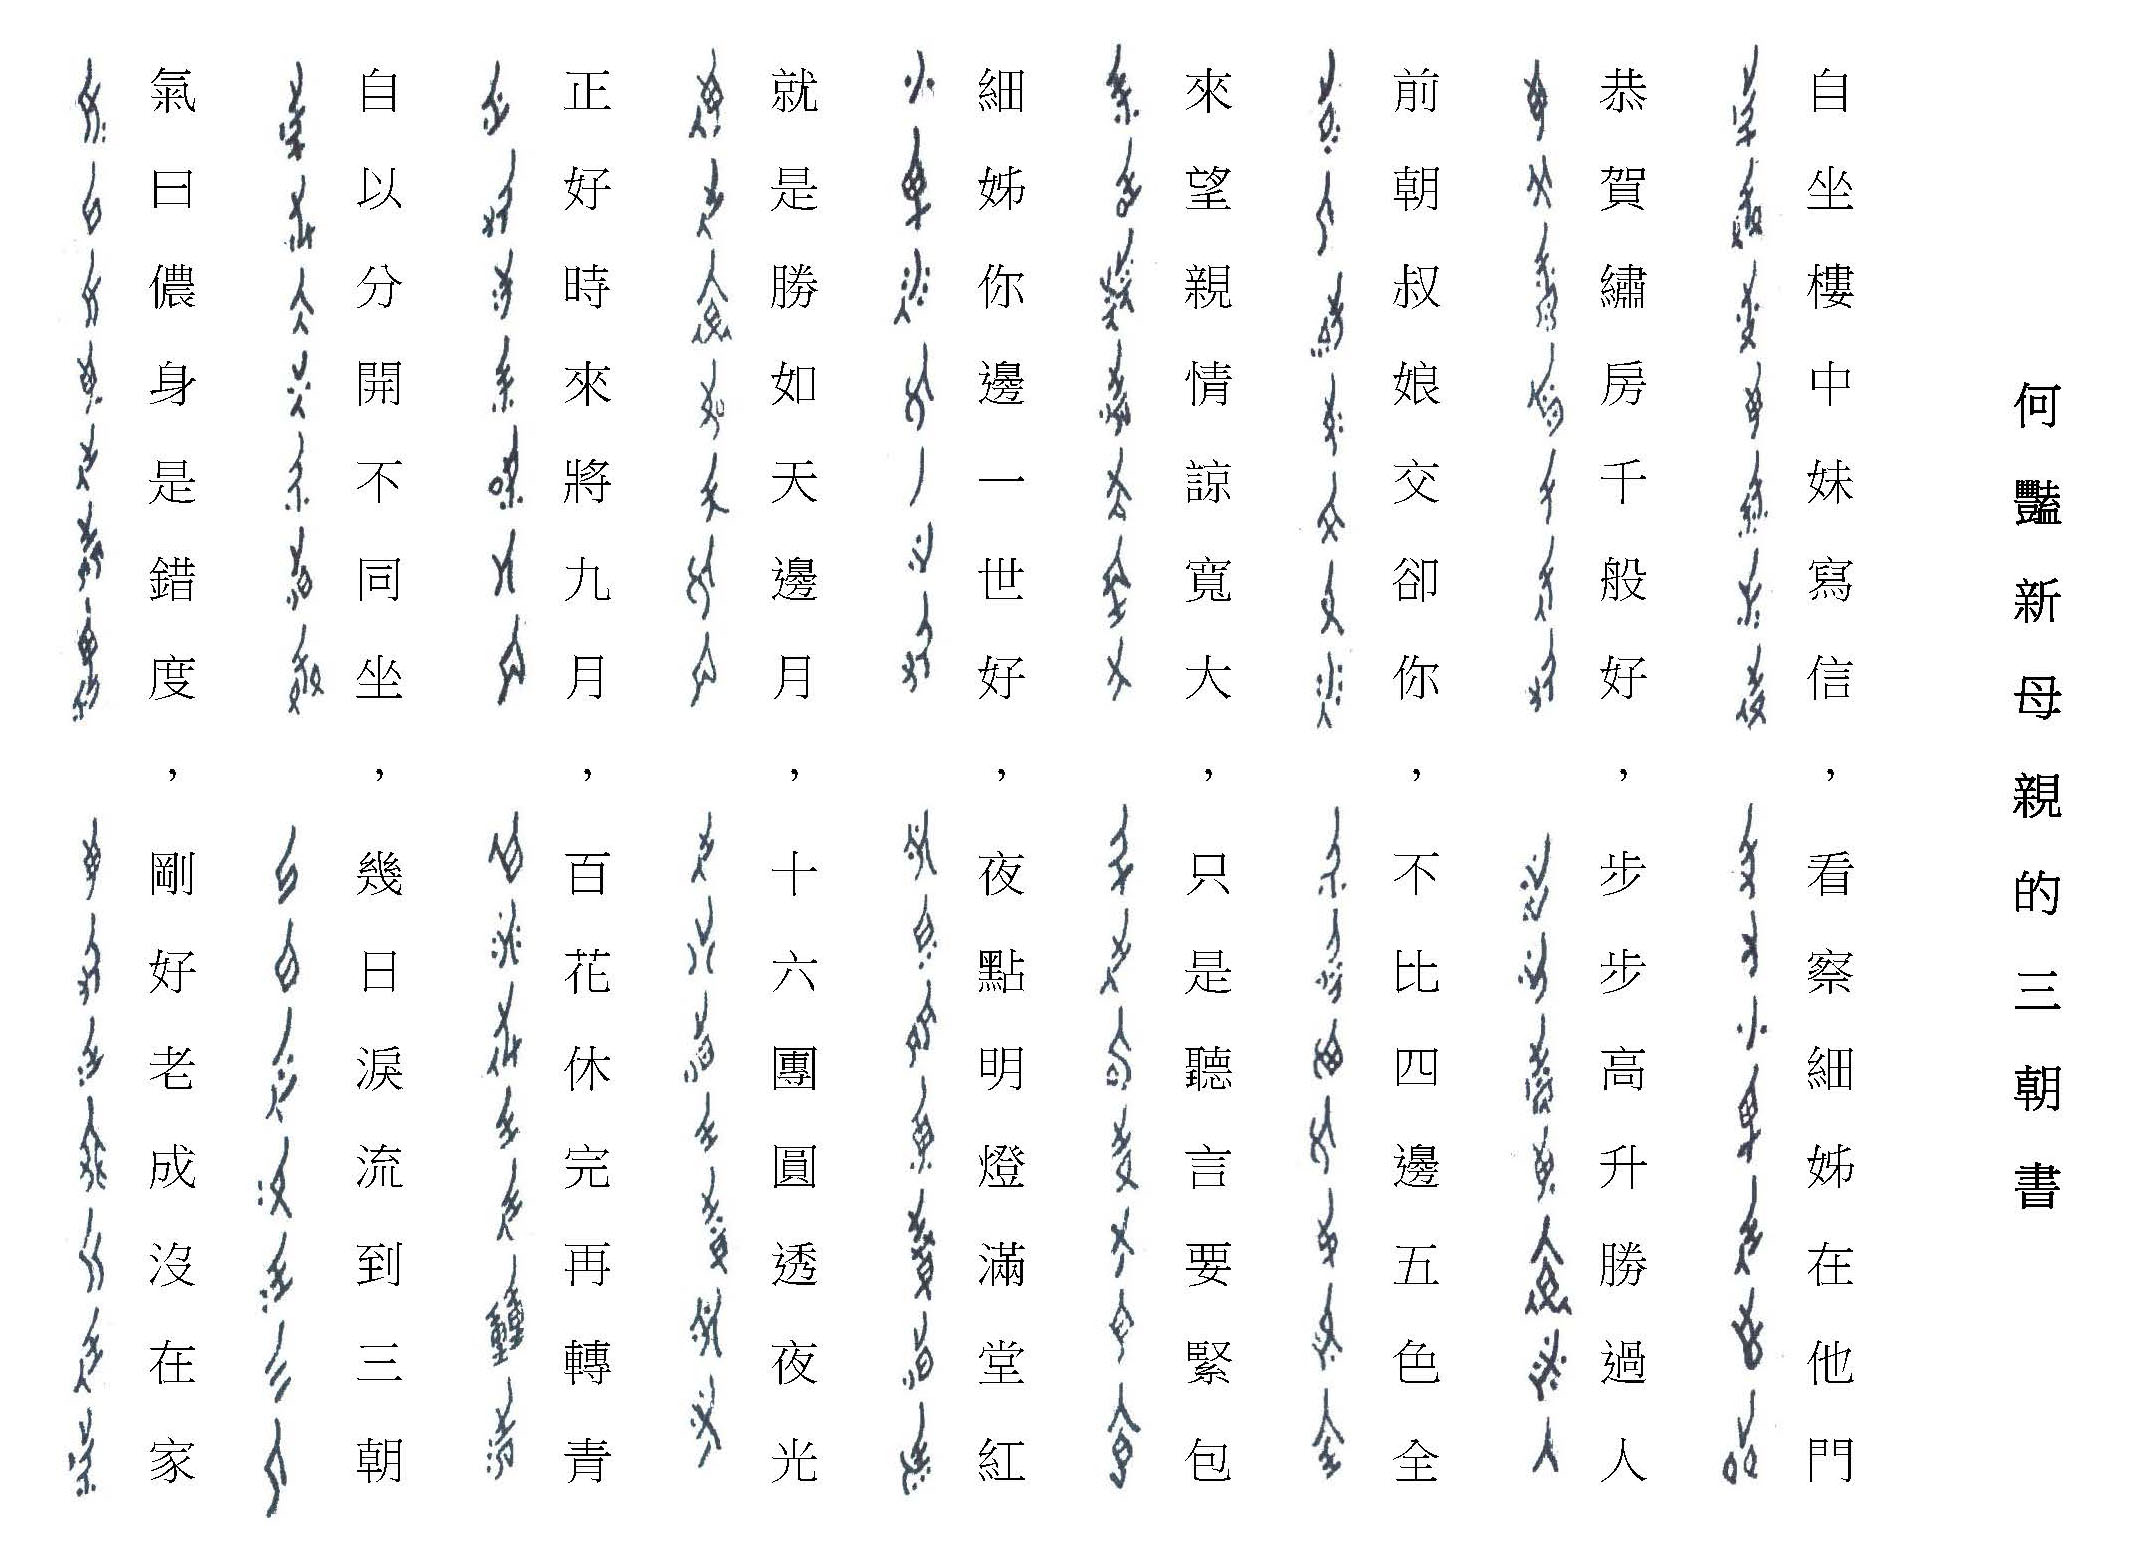 女書與漢字的對照圖片來源│劉斐玟